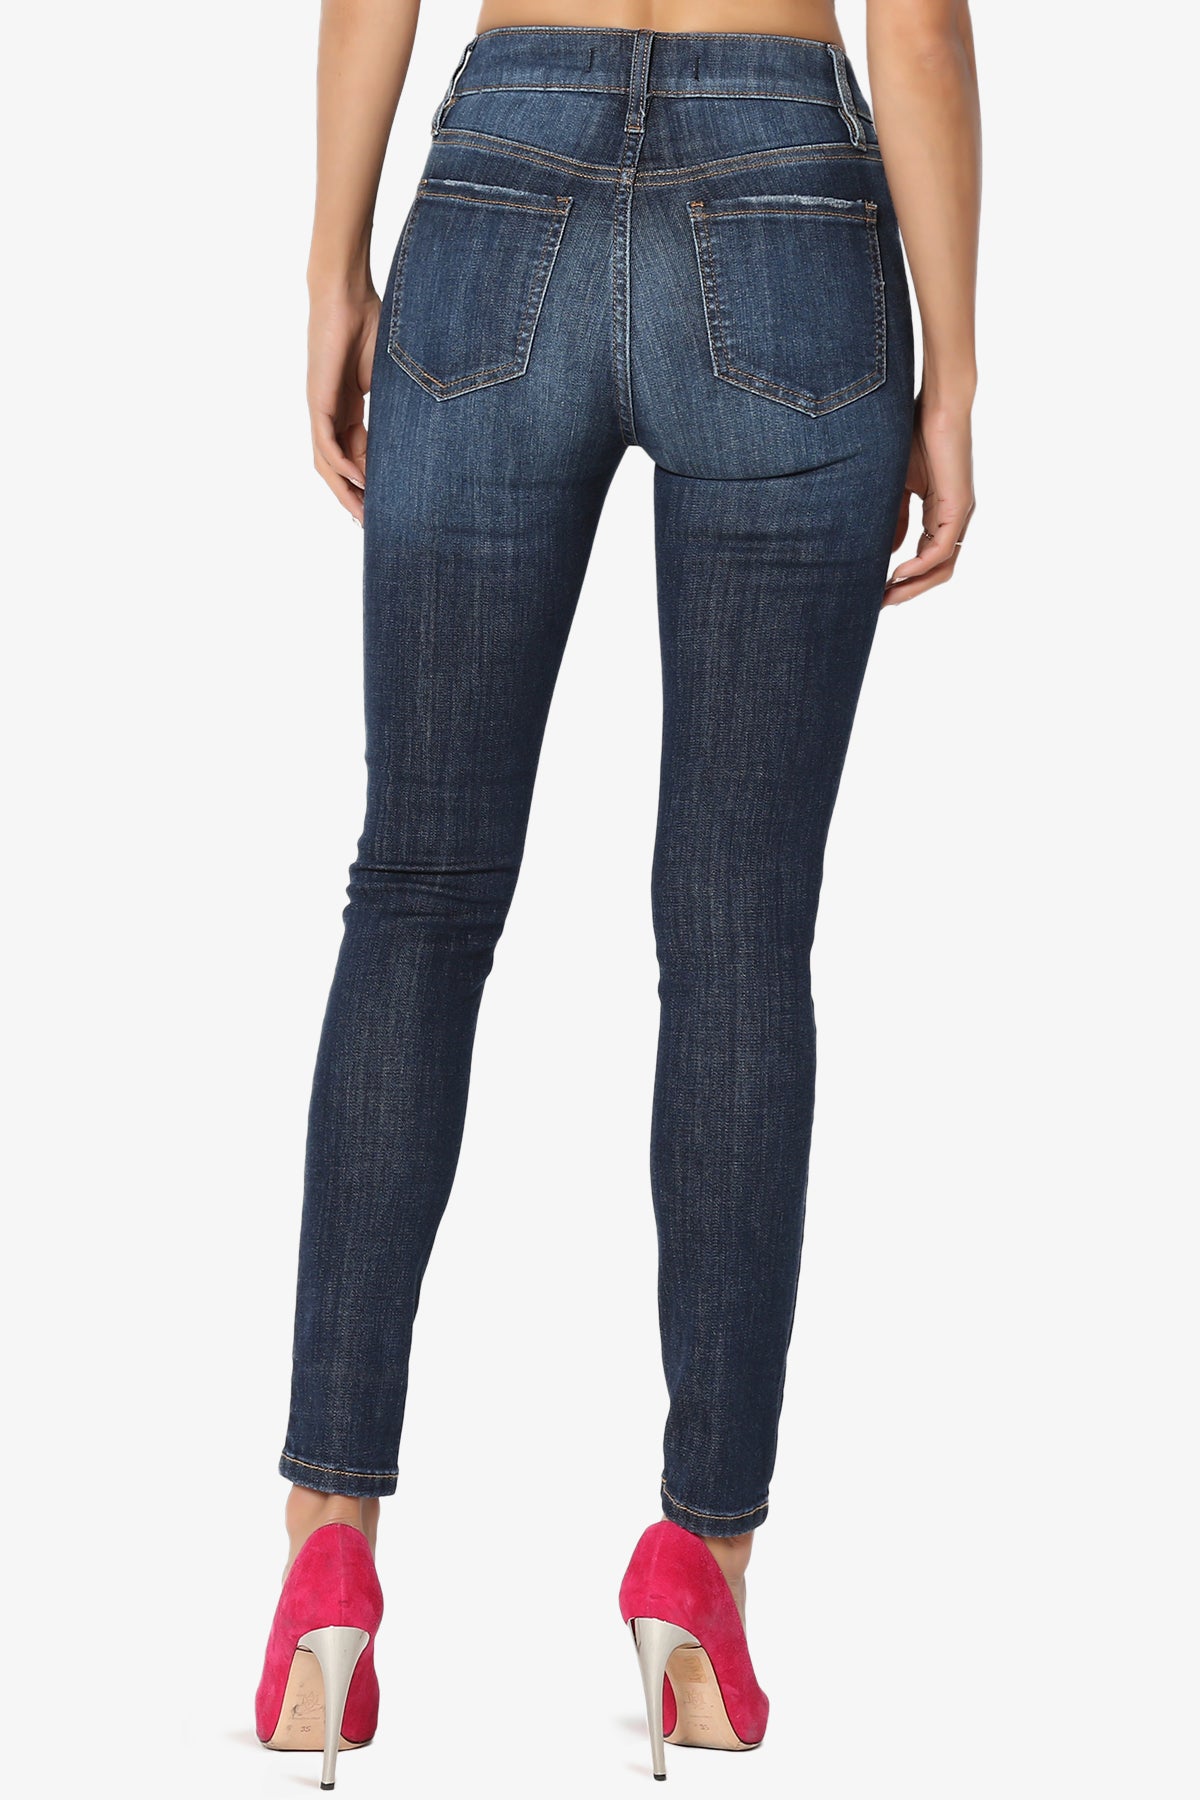 Imogen Button High Waist Jeans